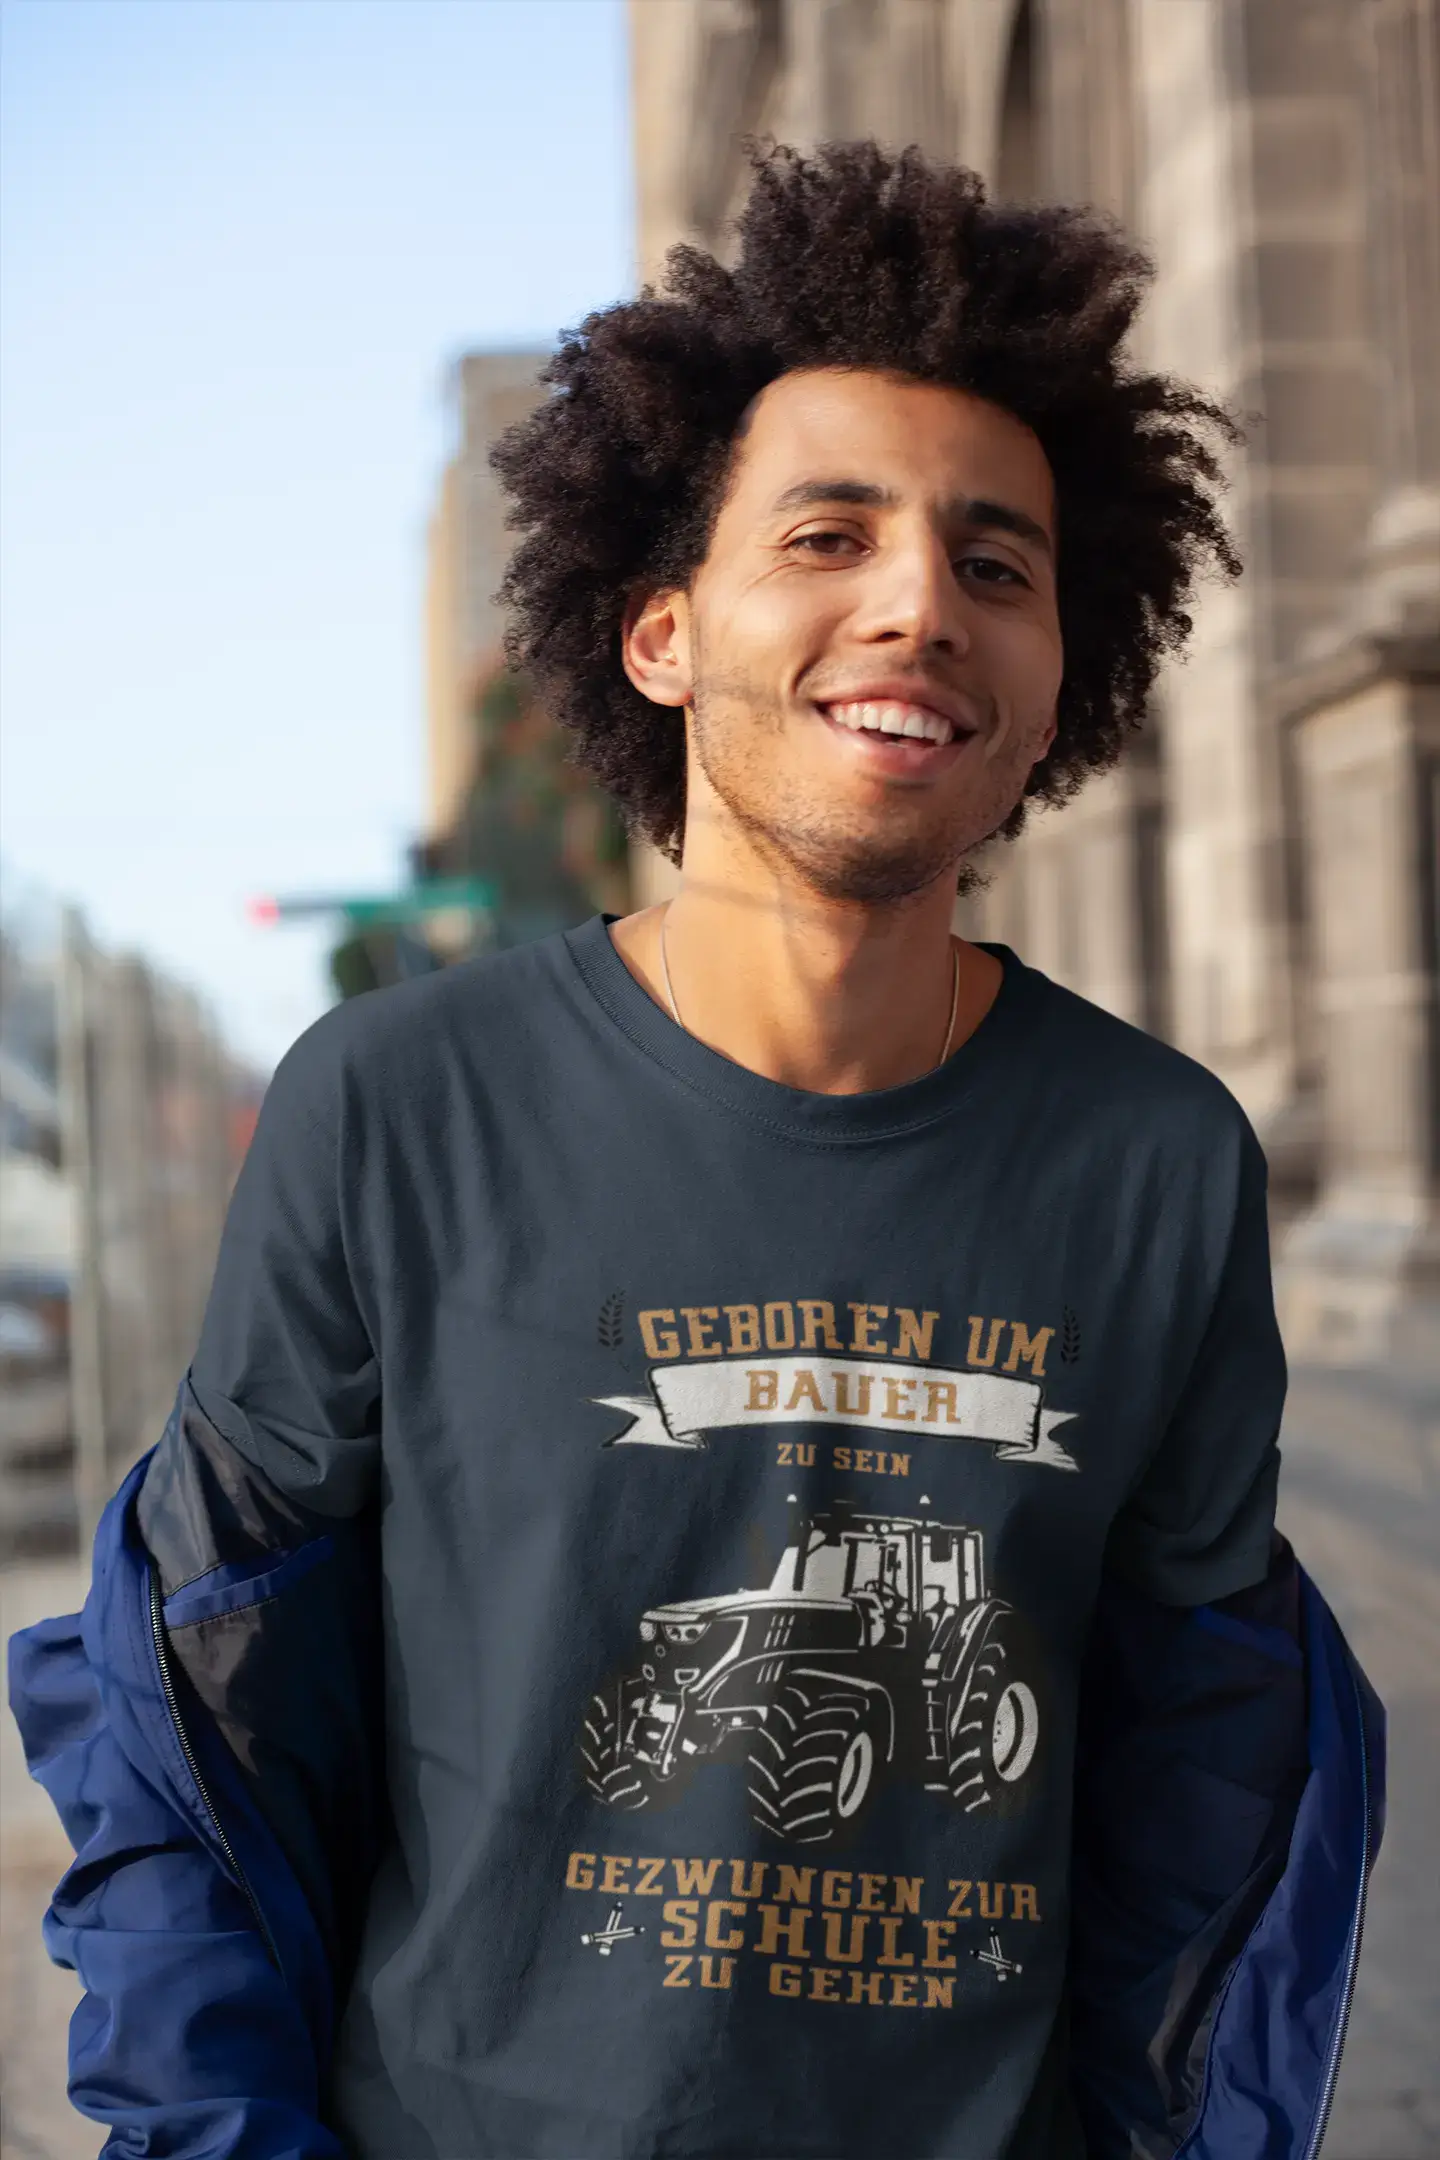 Men's Graphic T-Shirt Geboren um bauer Gift Idea